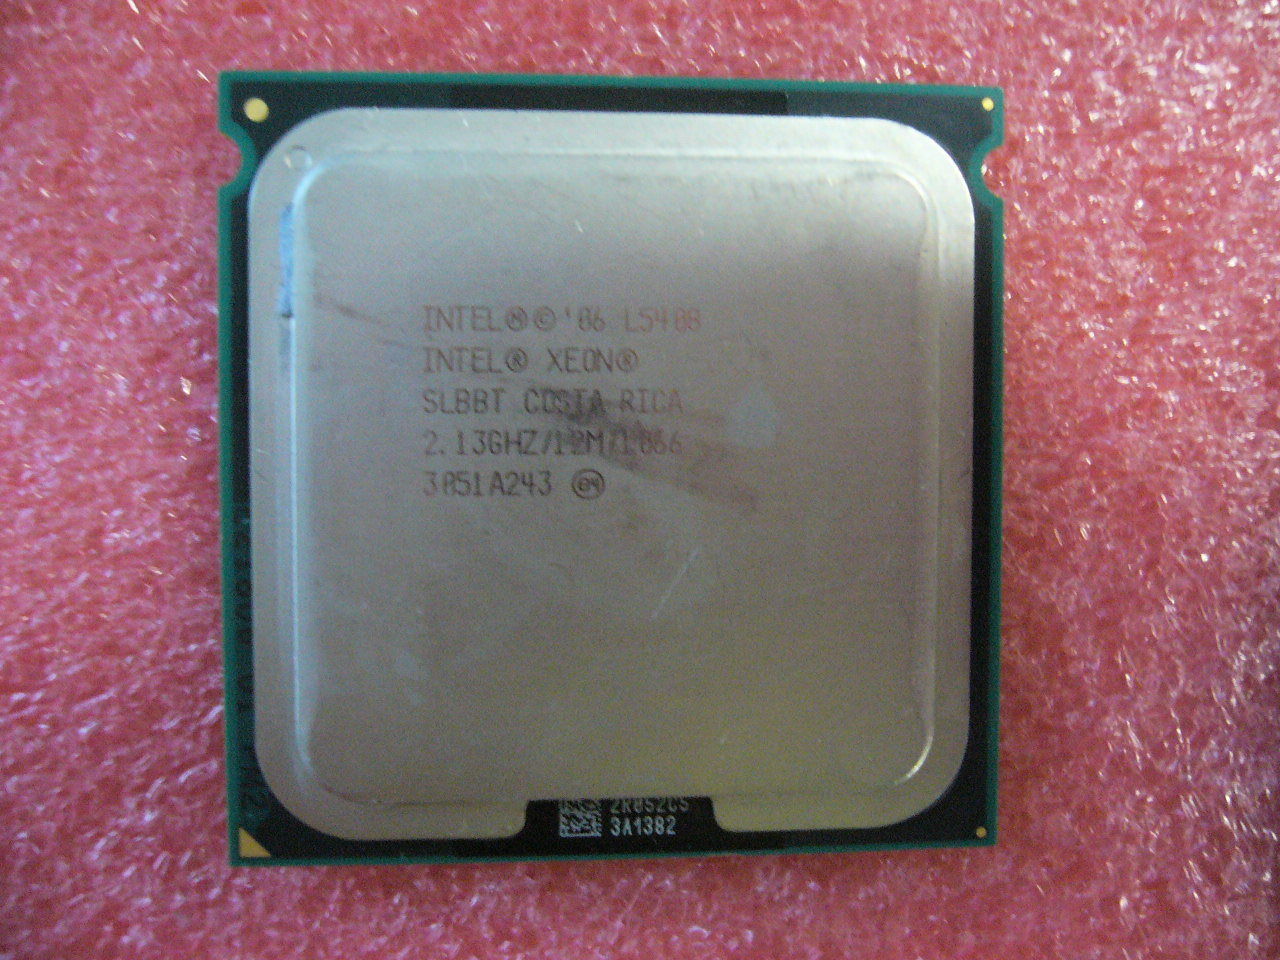 QTY 1x Intel Xeon CPU Quad Core L5408 2.13Ghz/12MB/1066Mhz LGA771 SLBBT TDP 40W